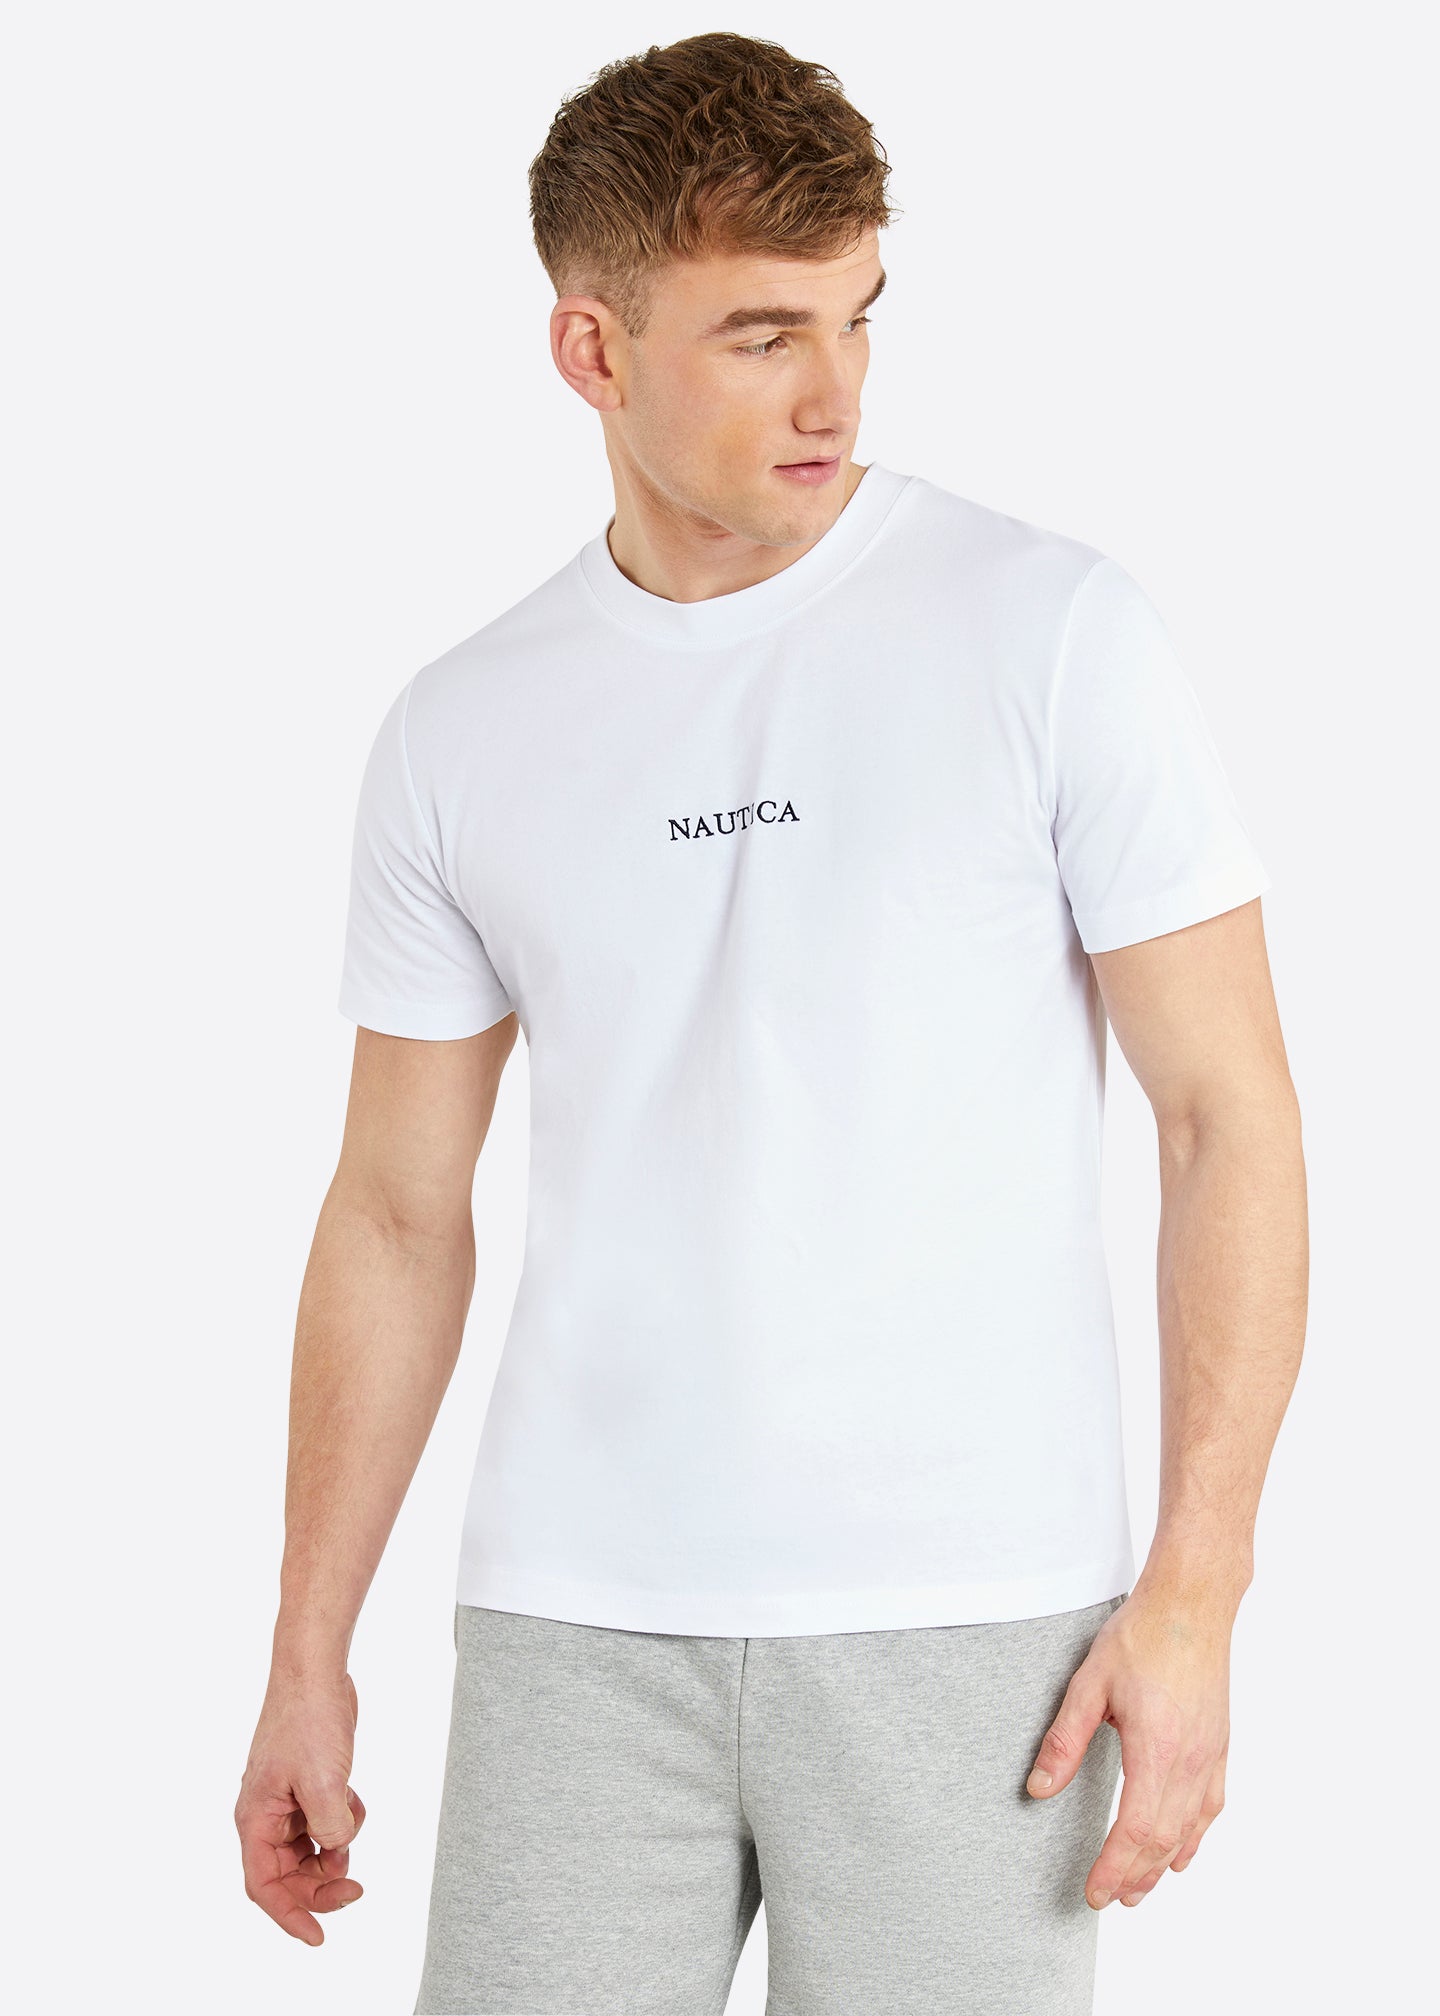 Nautica Ybor T-Shirt - White - Front